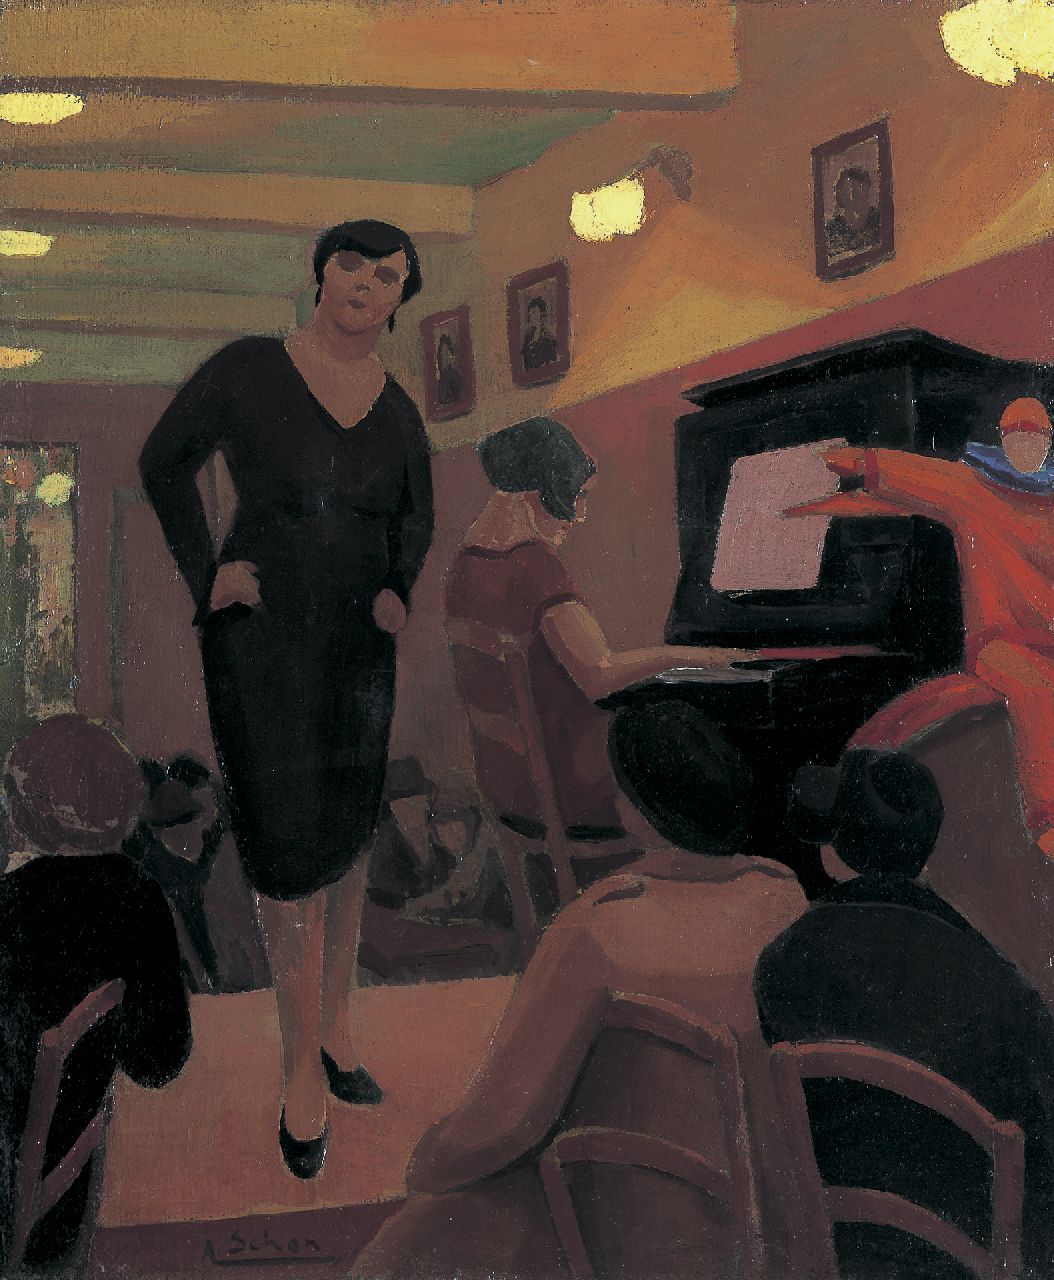 Schön A.  | Arthur Schön | Schilderijen te koop aangeboden | Cabaret, olieverf op doek 60,5 x 50,5 cm, gesigneerd linksonder en verso gedateerd 1928